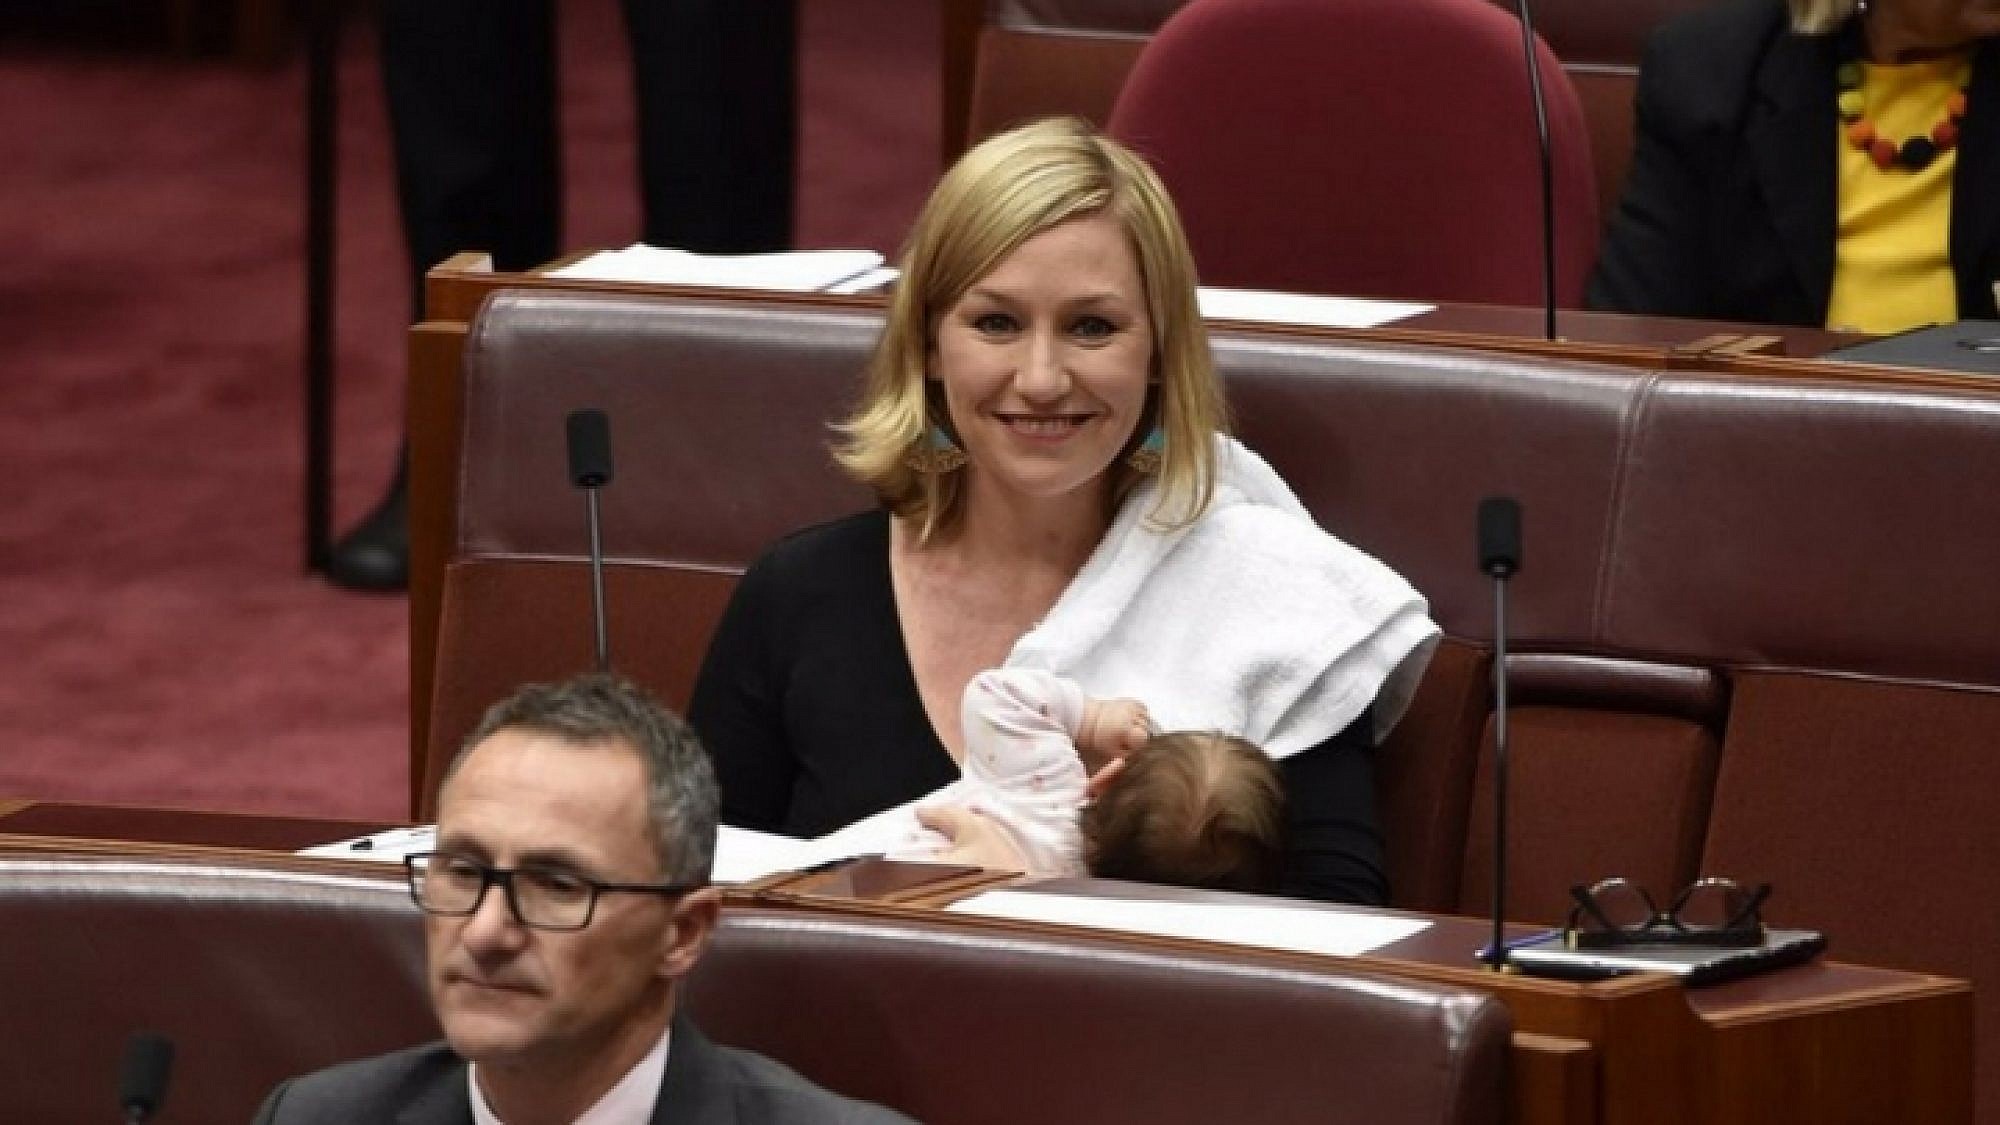 הסנטורית האוסטלרית האוסטרלית לריסה ווטרס מניקה את בתה בפרלמנט. מתי אצלנו? | צילום: מתוך חשבון הטוויטר שלה @larissawaters